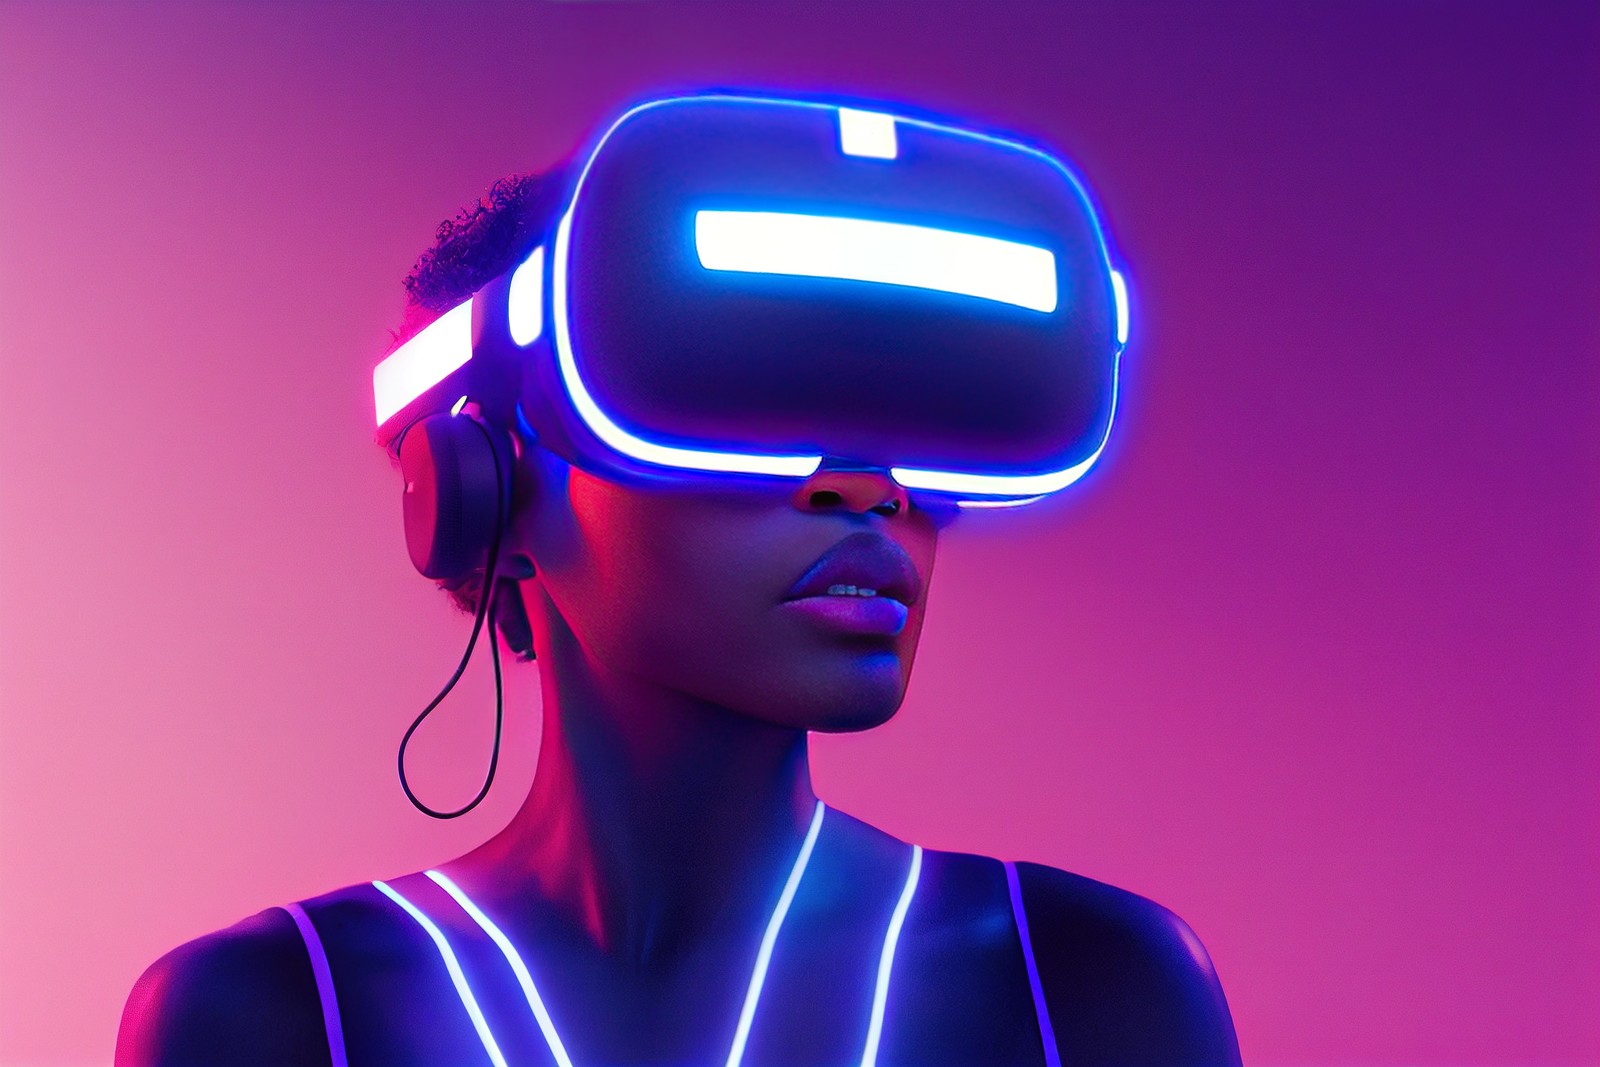 这是一位女性，她戴着虚拟现实头盔和耳机，周围是粉紫色的光环境，看起来像是在体验高科技的虚拟现实内容。